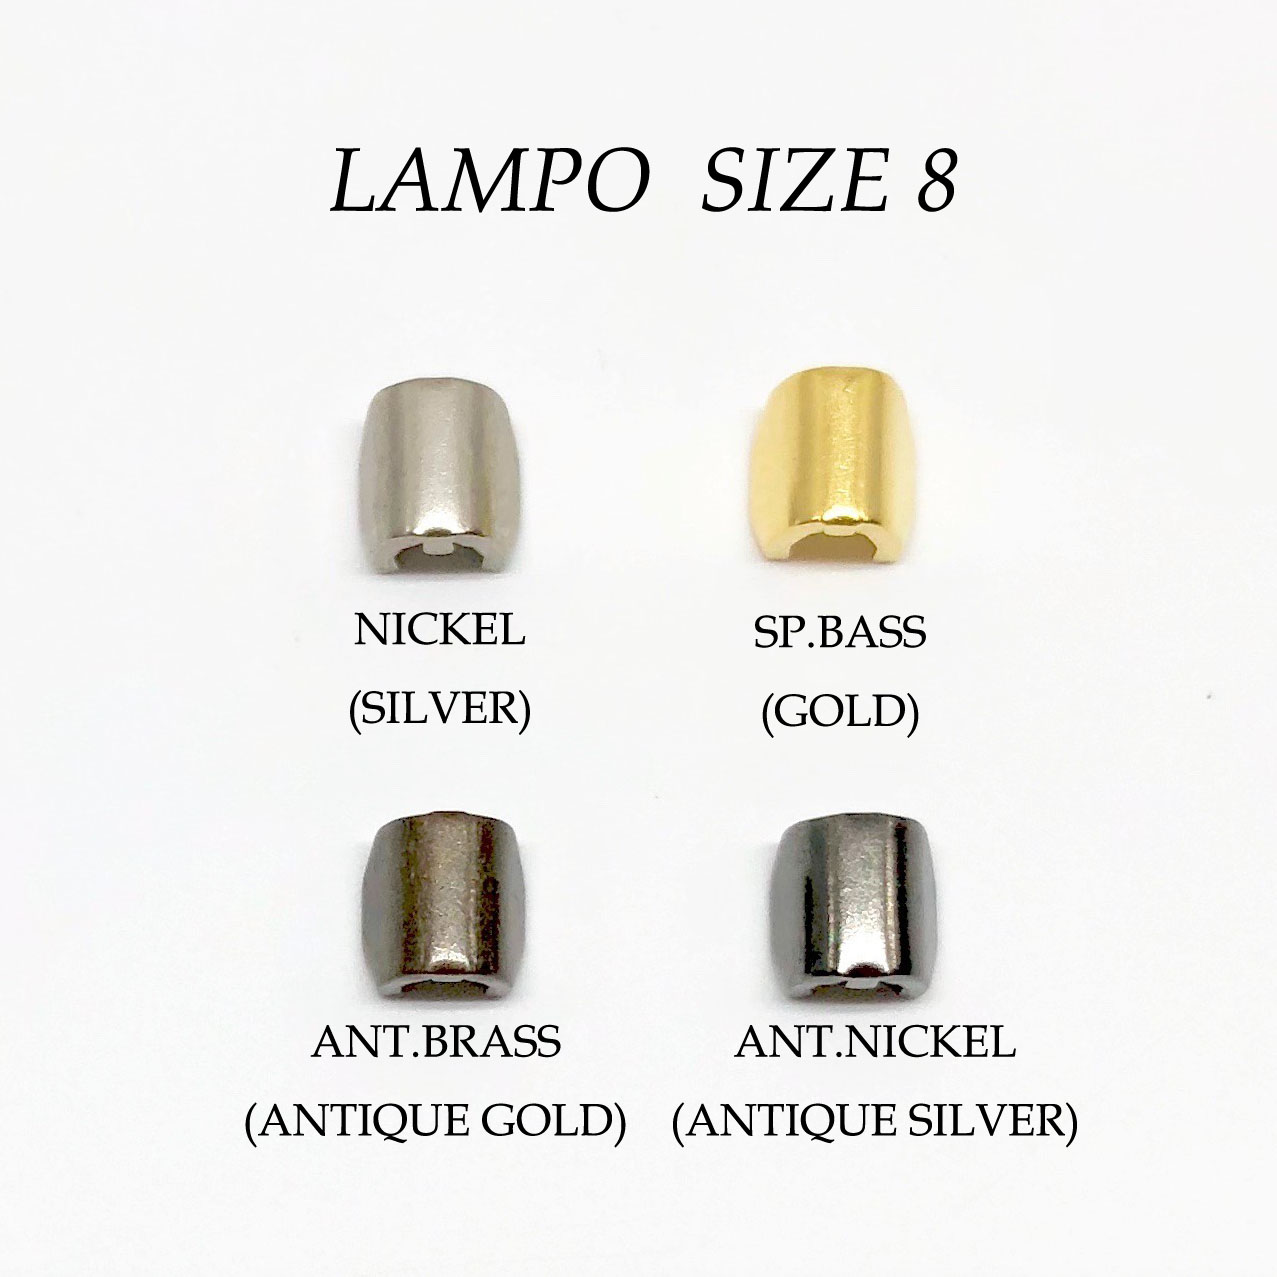 183S 僅適用於 Super LAMPO拉鍊上止尺寸8 LAMPO(GIOVANNI LANFRANCHI SPA)